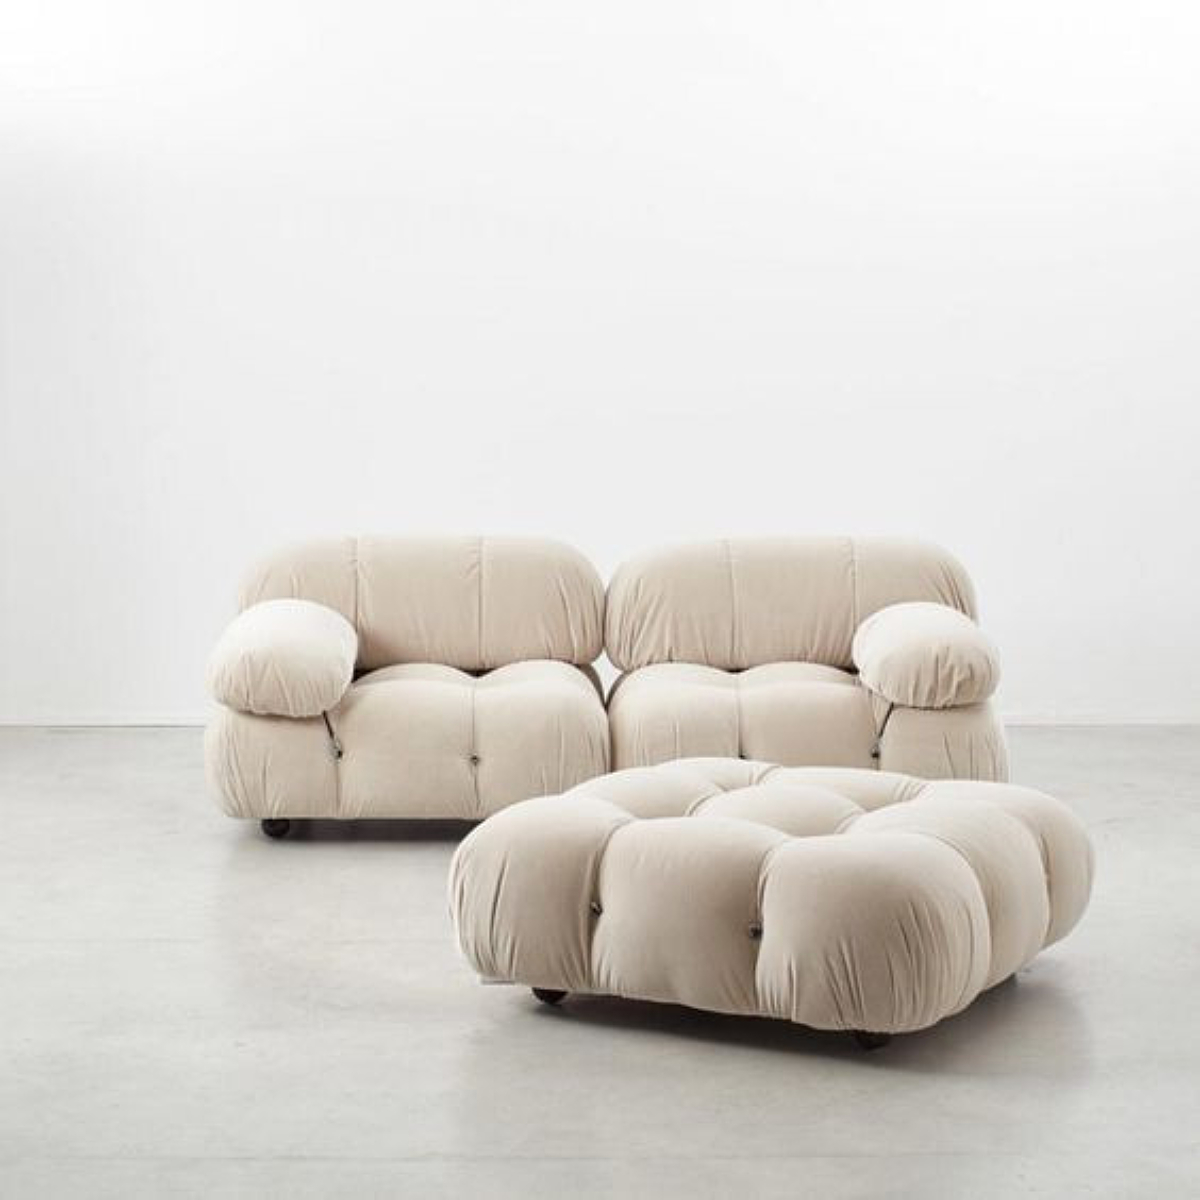 De Camaleonda is een modulaire sofa ontworpen door Mario Bellini